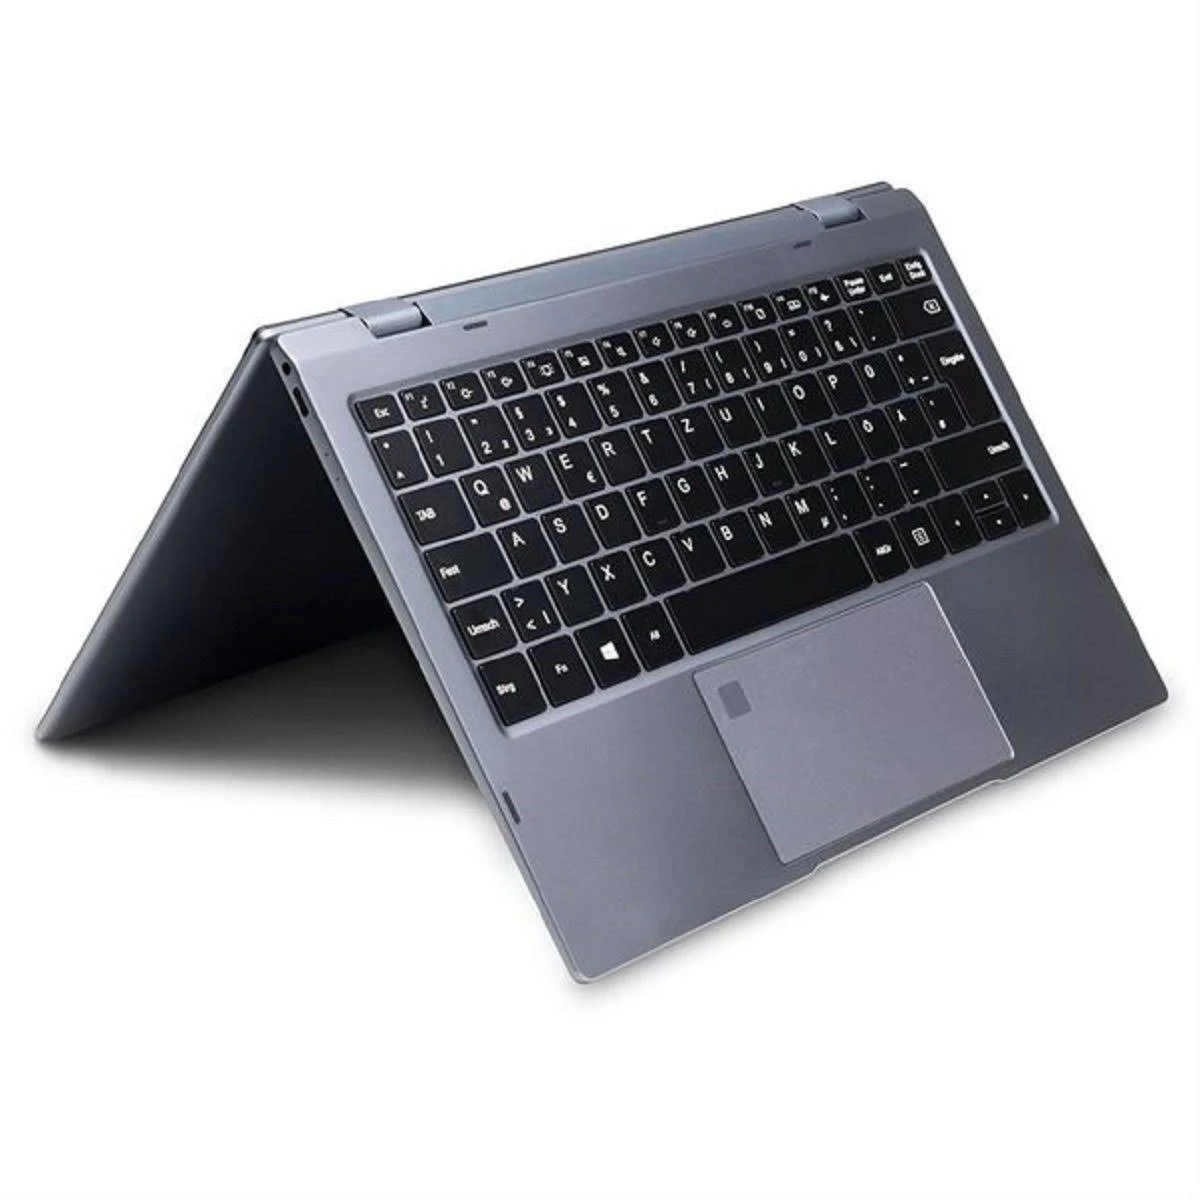 WORTMANN 360-13, Notebook 16 SSD, 512 GB 13,3 Core™ mit Display, GB Grau i5 Prozessor, Zoll RAM, Intel®